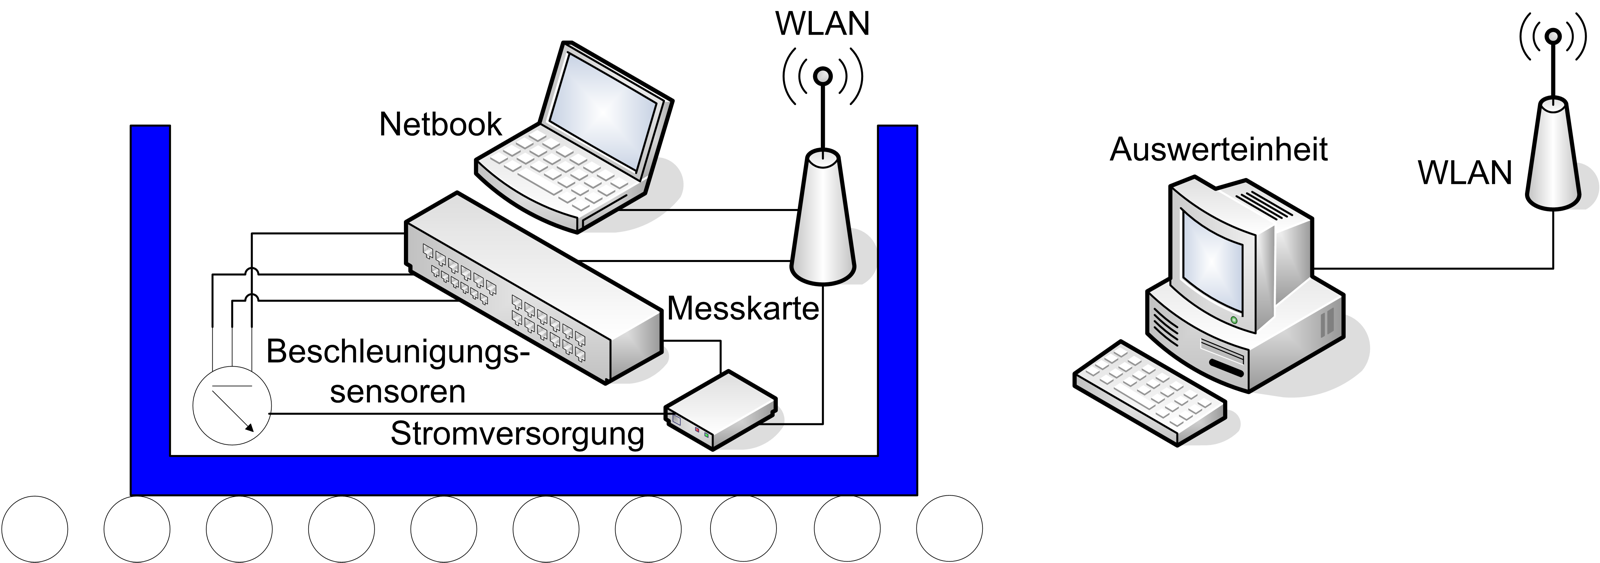 Mit Hilfe des W-Lan-Routers kann eine Verbindung zu einer stationären Auswerteinheit aufgebaut werden, welche entweder die Rohdaten oder die preevaluierten Messdaten empfängt. Abbildung 4.